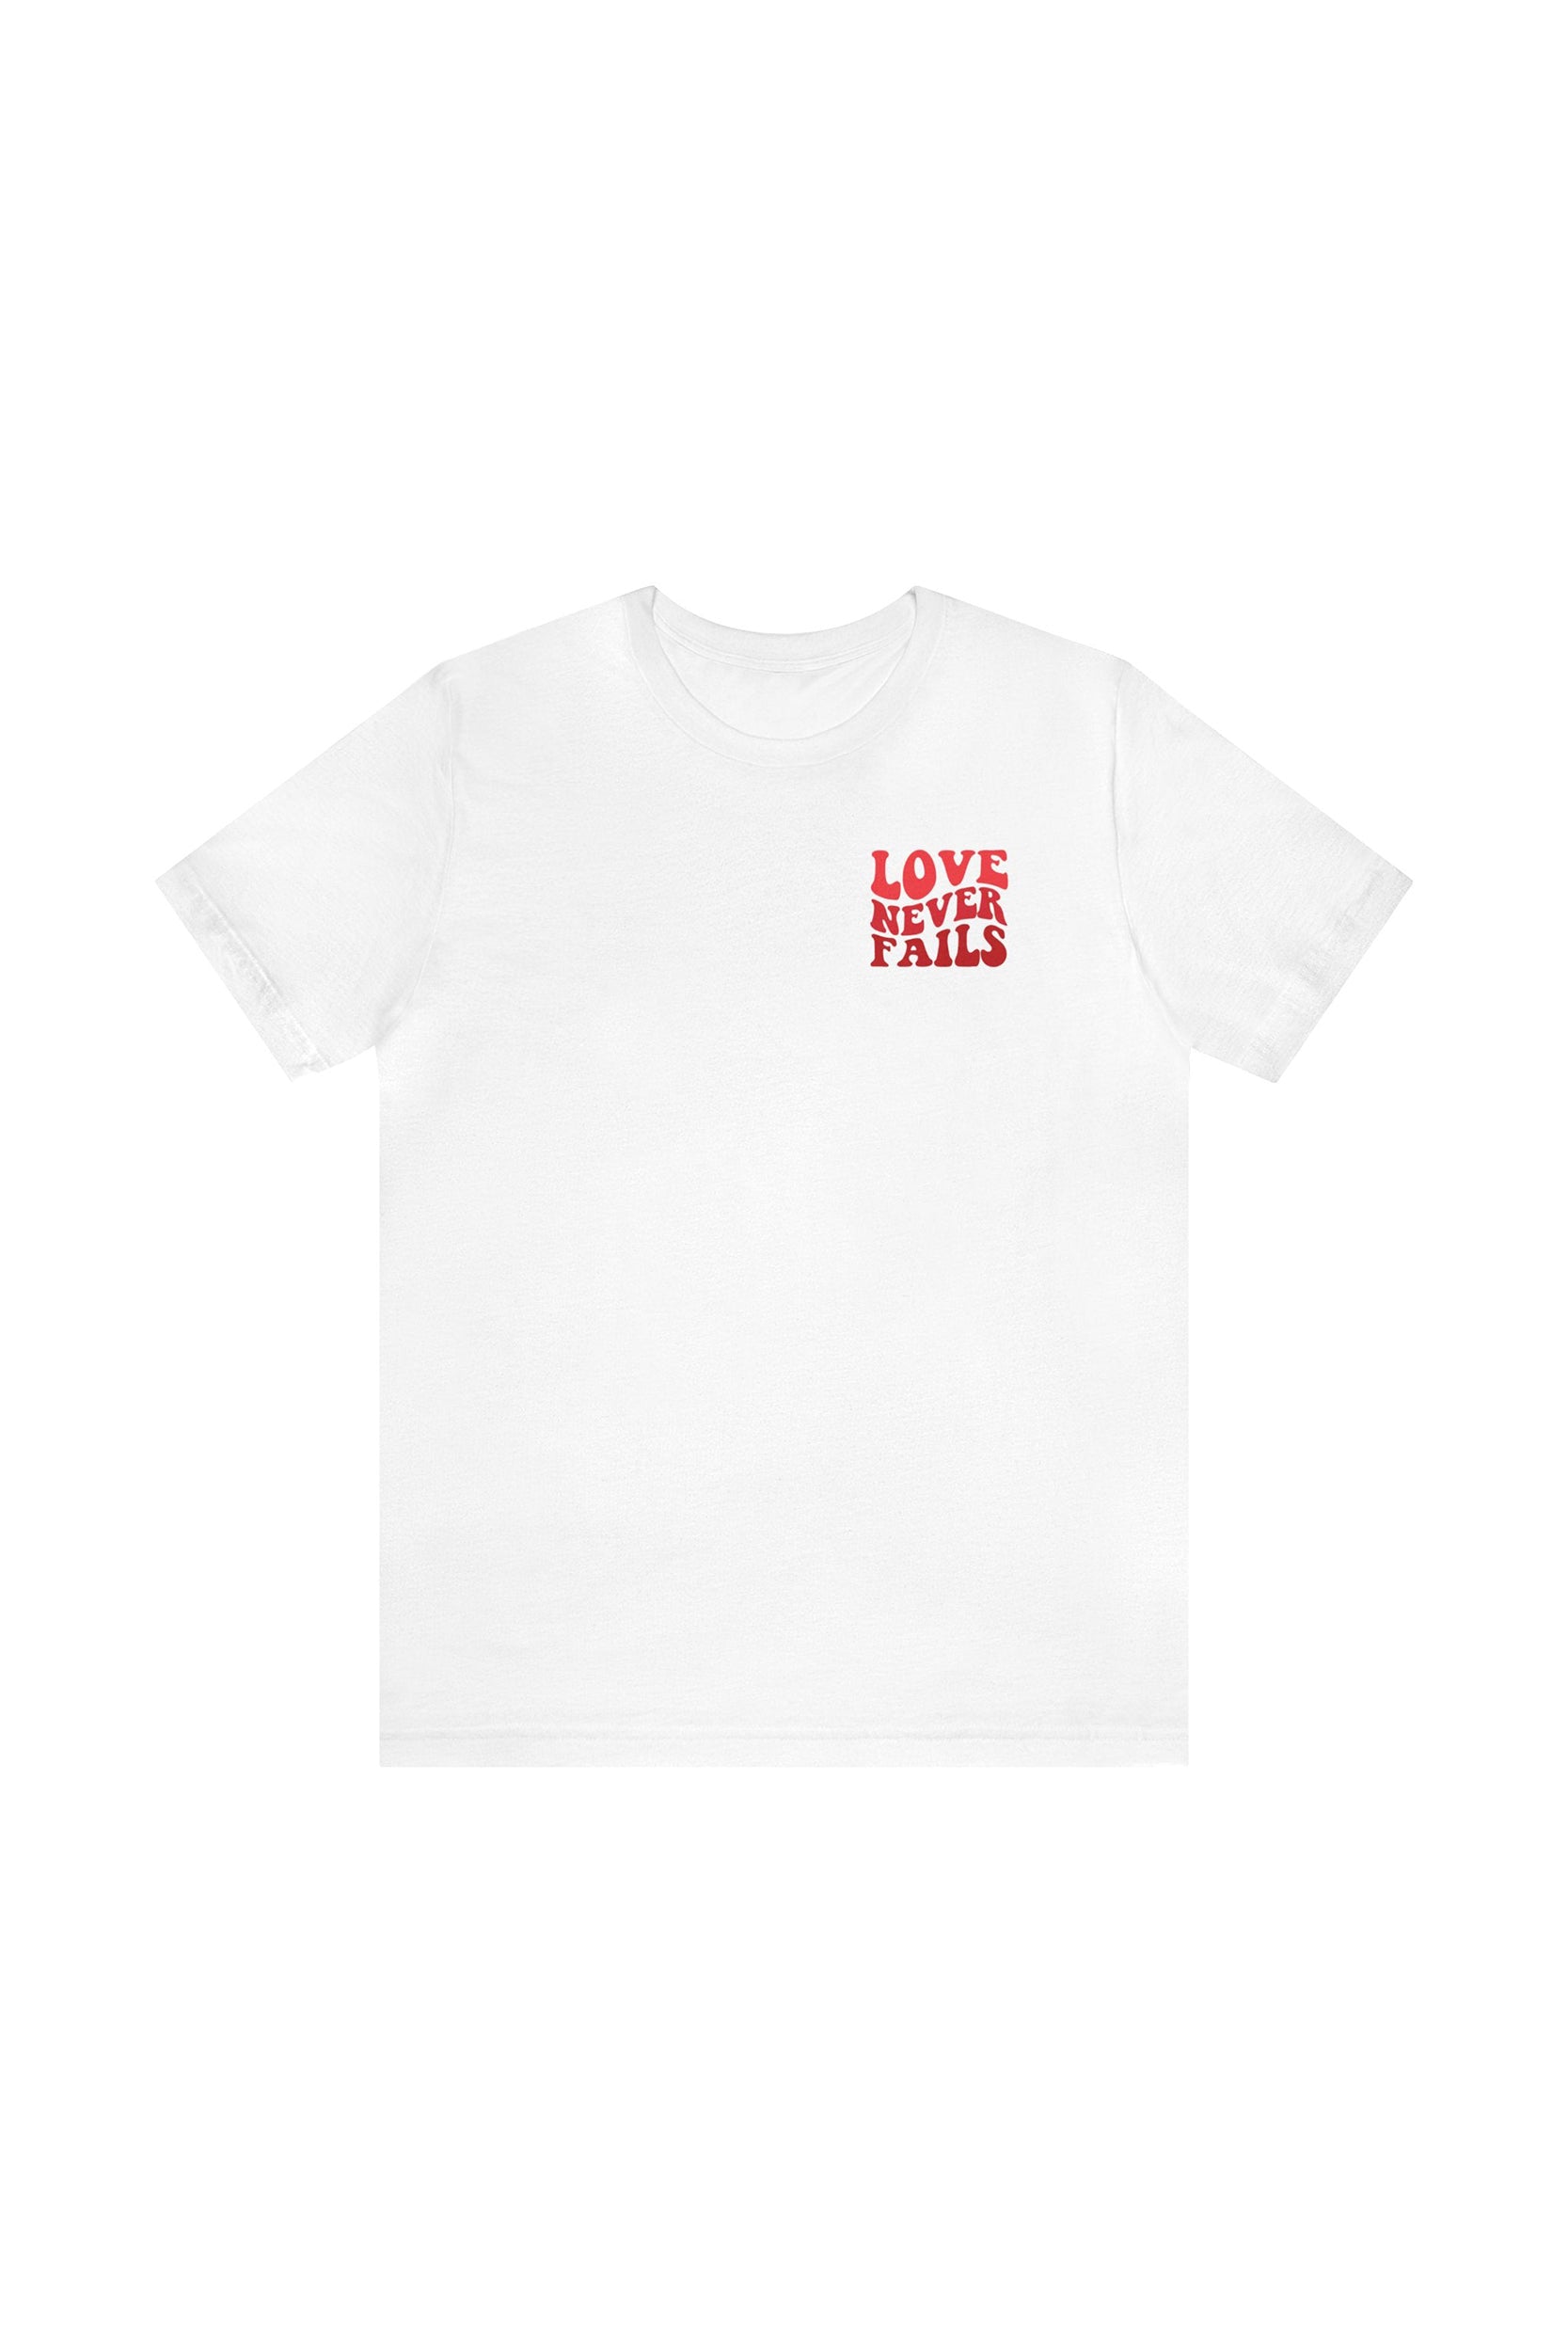 "LOVE NEVER FAILS" T-Shirt